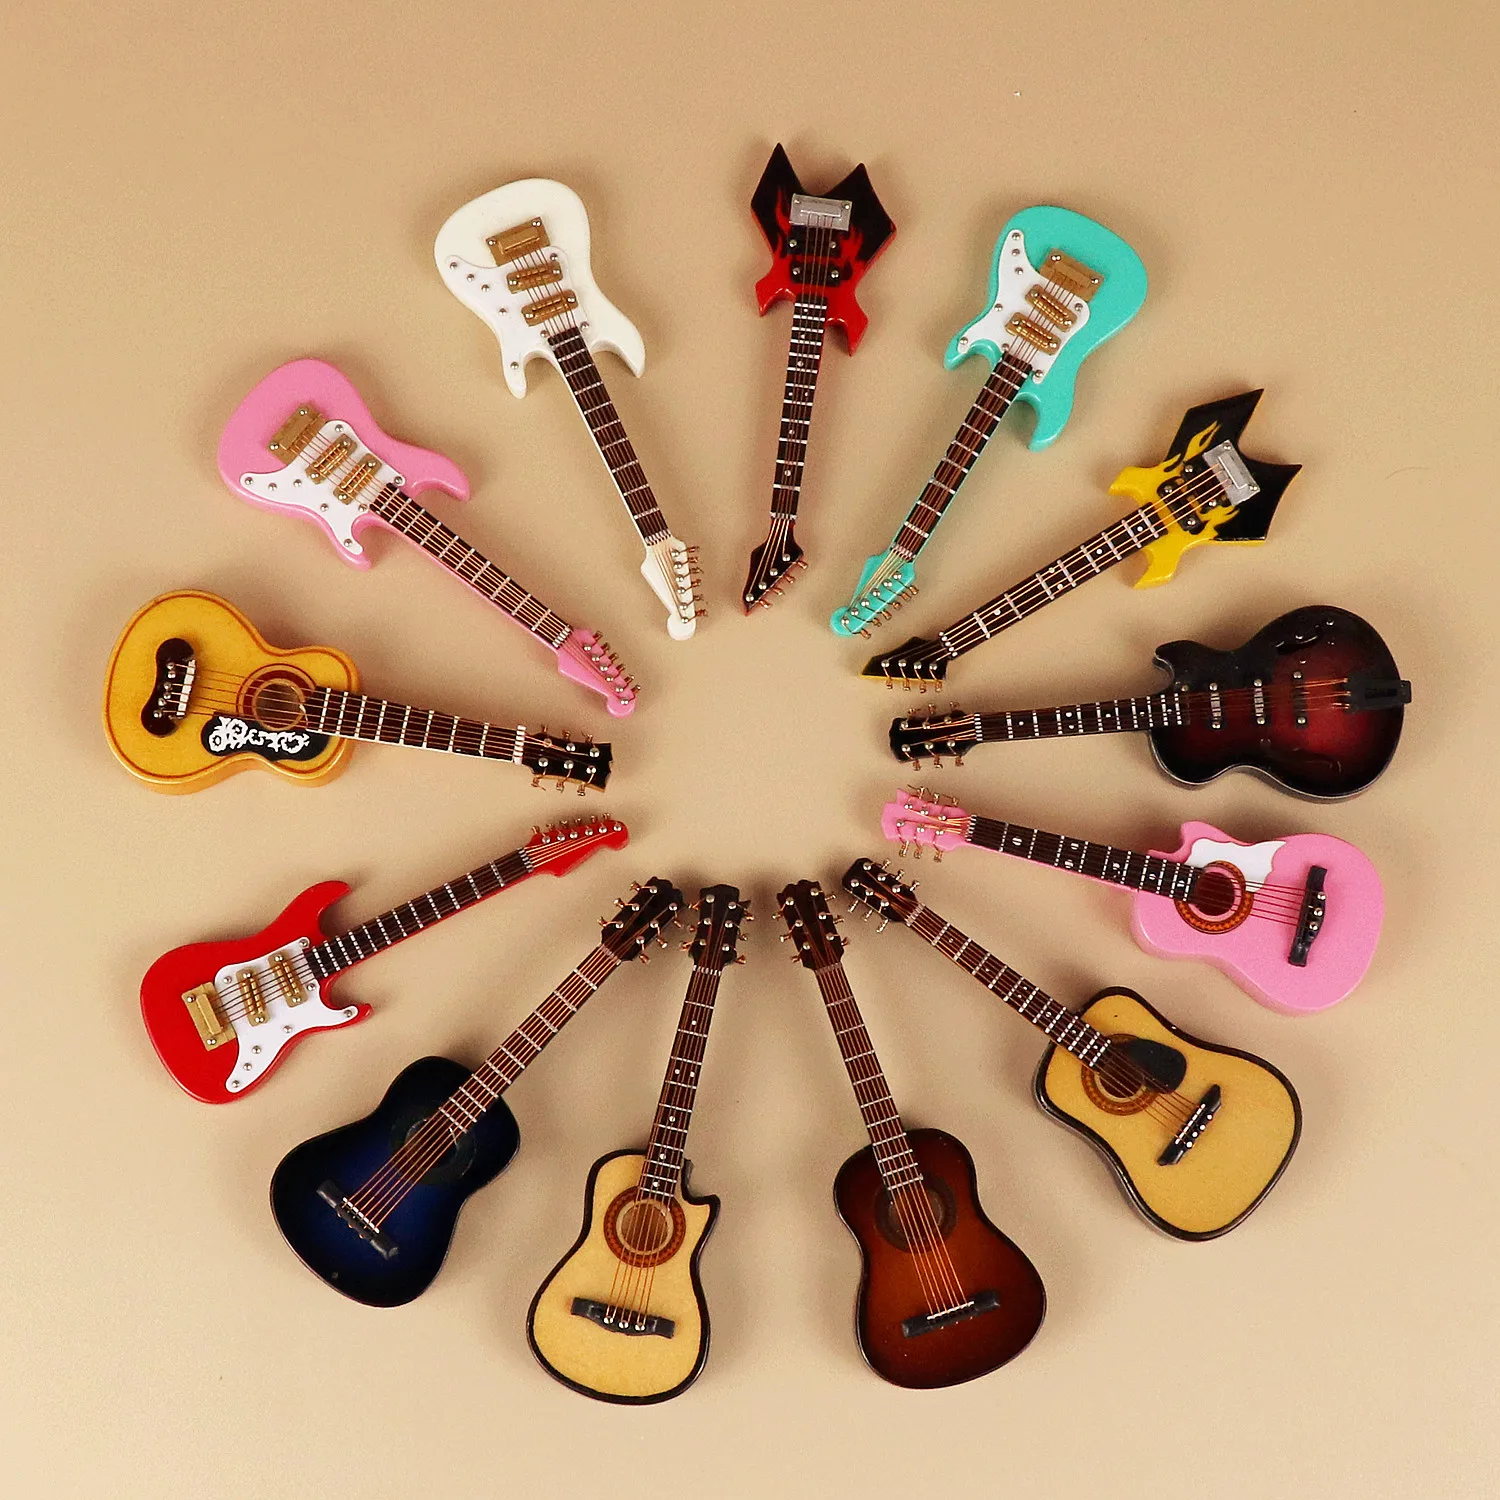 YID Modèle de guitare électrique miniature Violon Miniature en